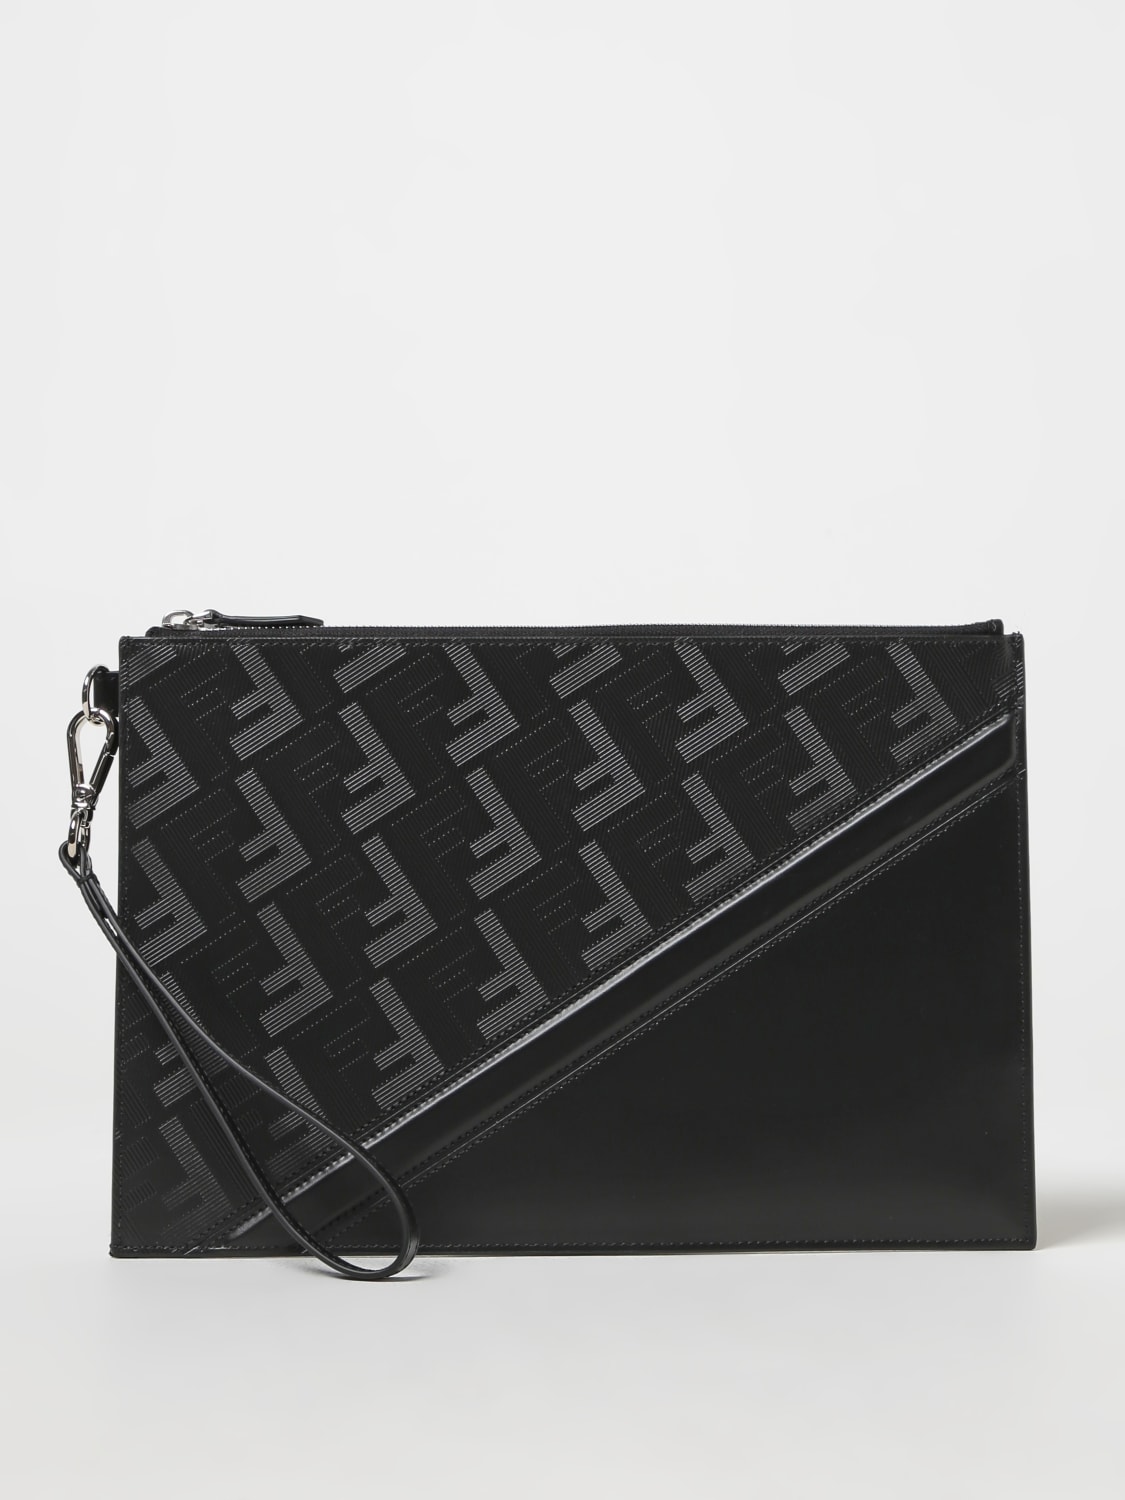 FENDI: Shadow Diagonal clutch in leather - Black | Fendi briefcase ...